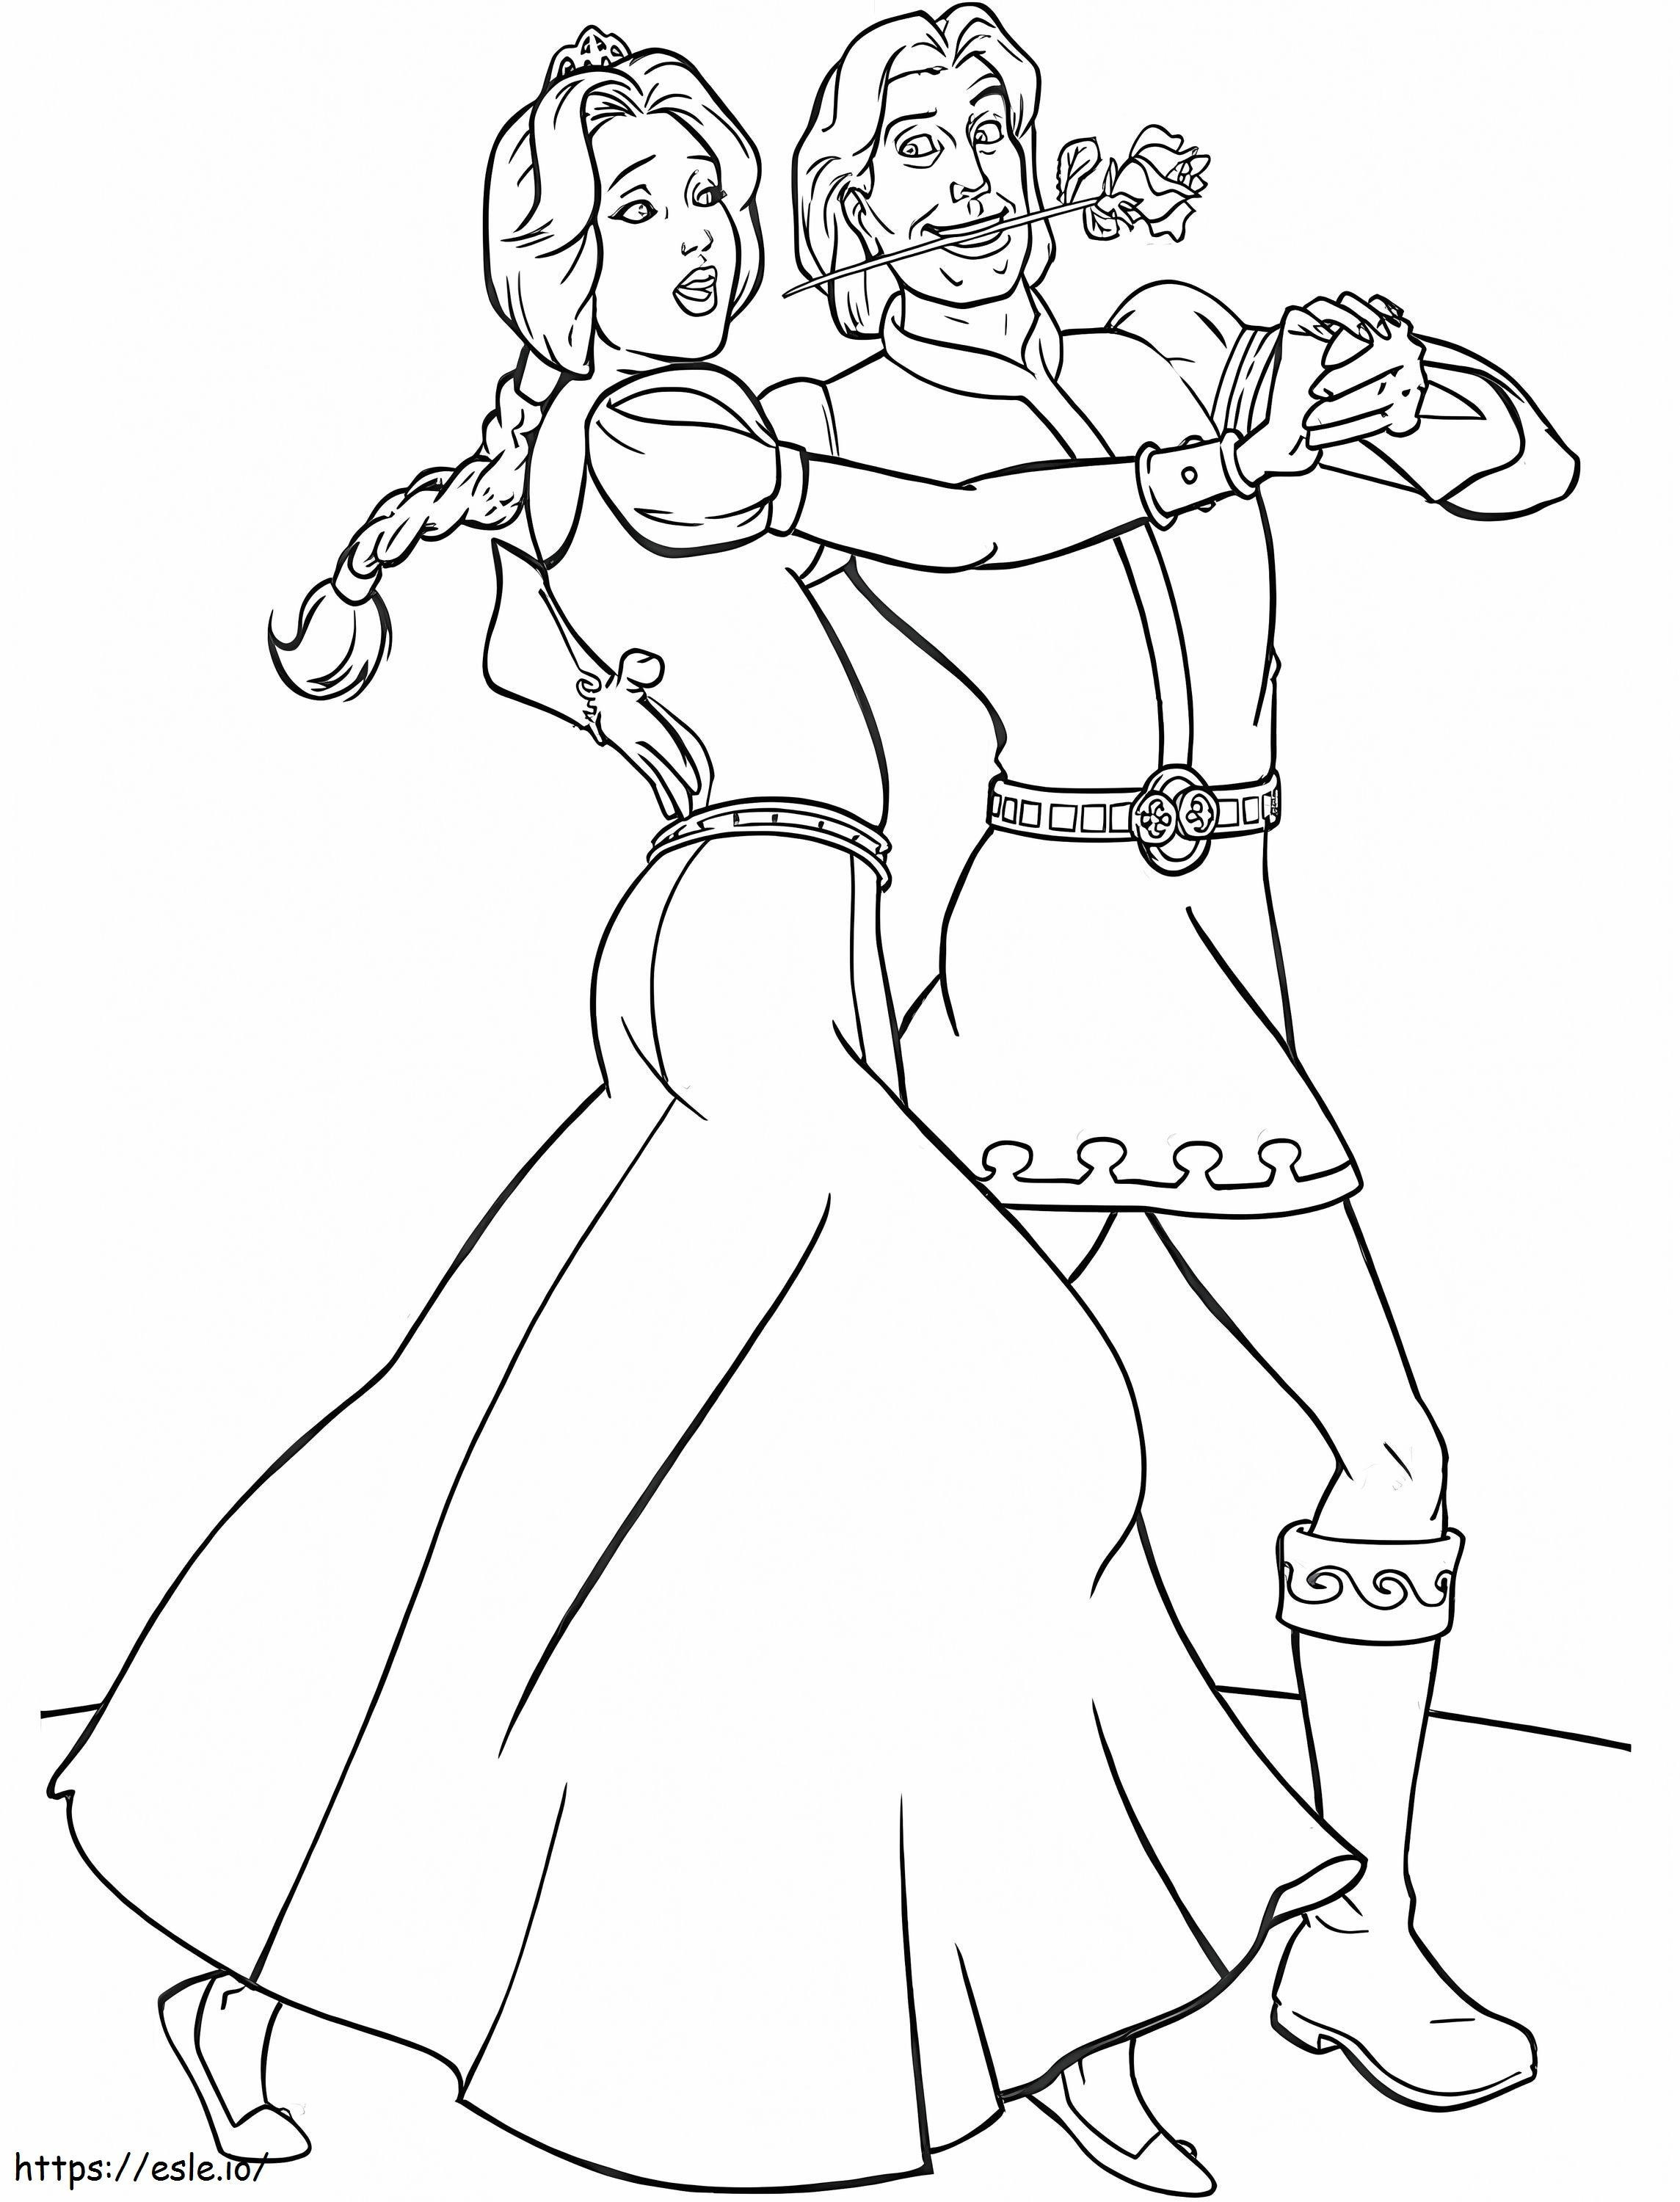  Fiona și prințul fermecător dansând A4 de colorat